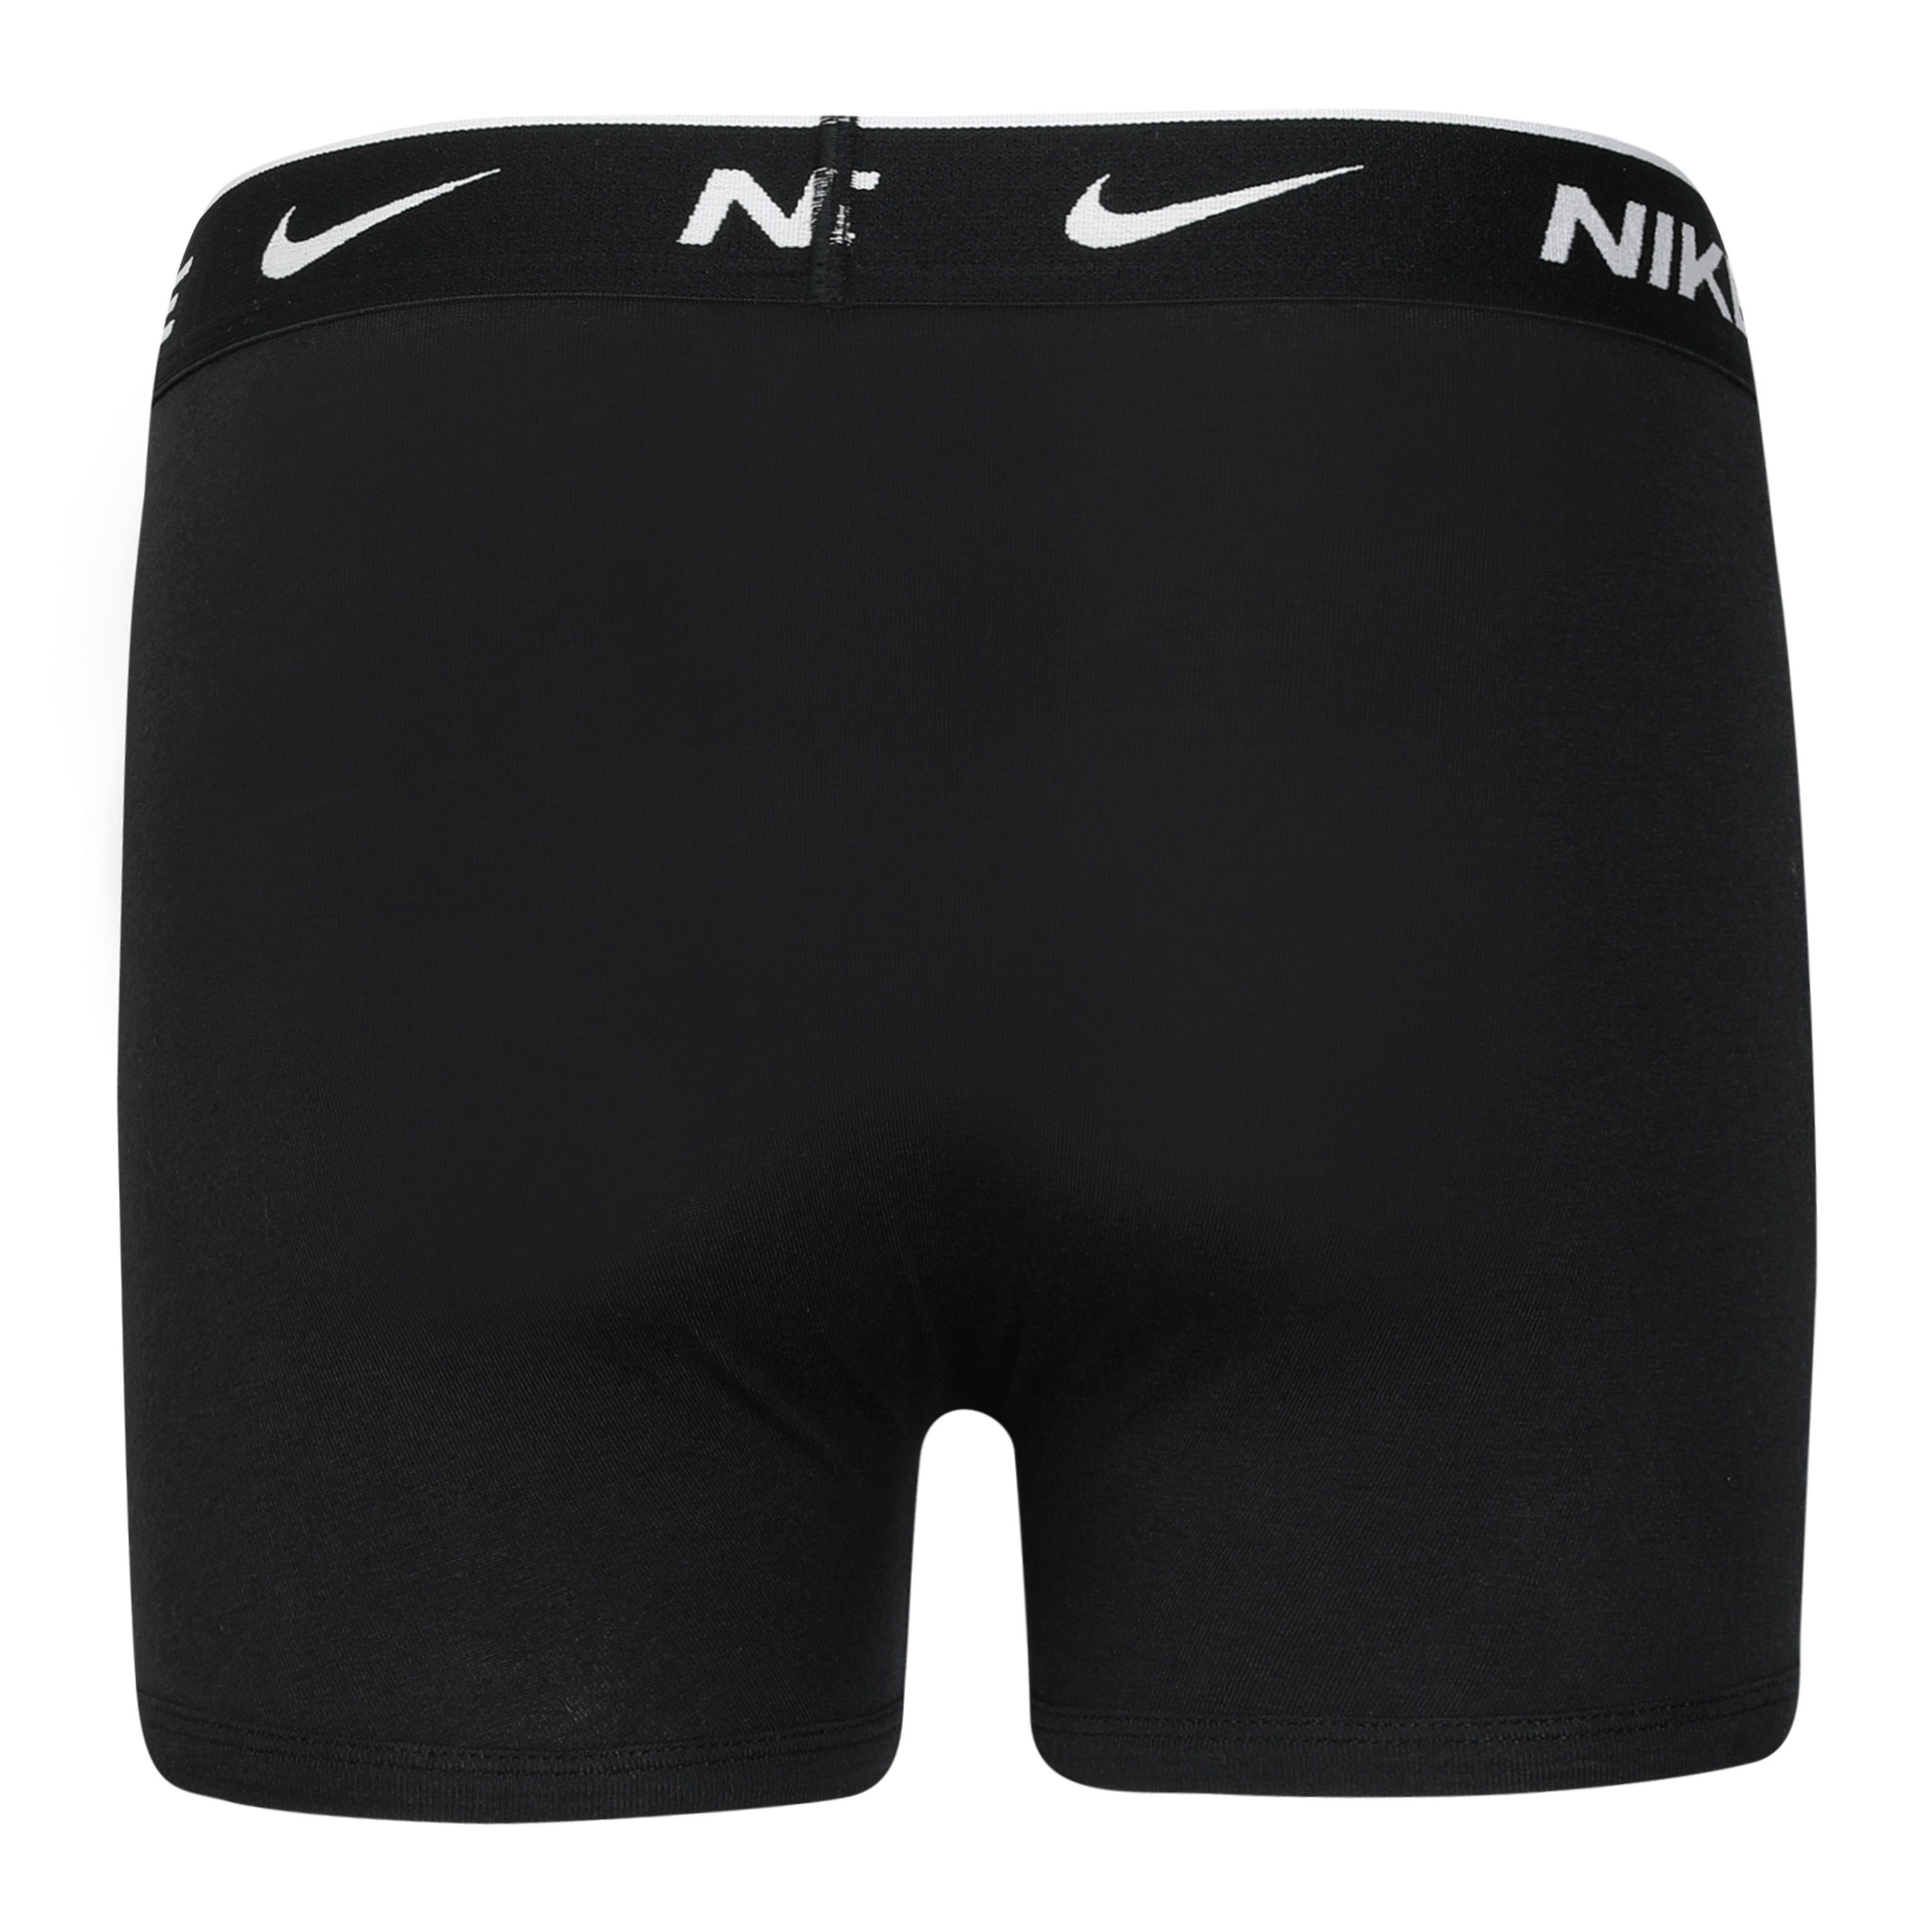 COTTON EVERYDAY Boxershorts schwarz, 3er-Pack) schwarz, BRIEF 3-St., Sportswear BOXER schwarz Nike Kinder (Packung, 3PK für